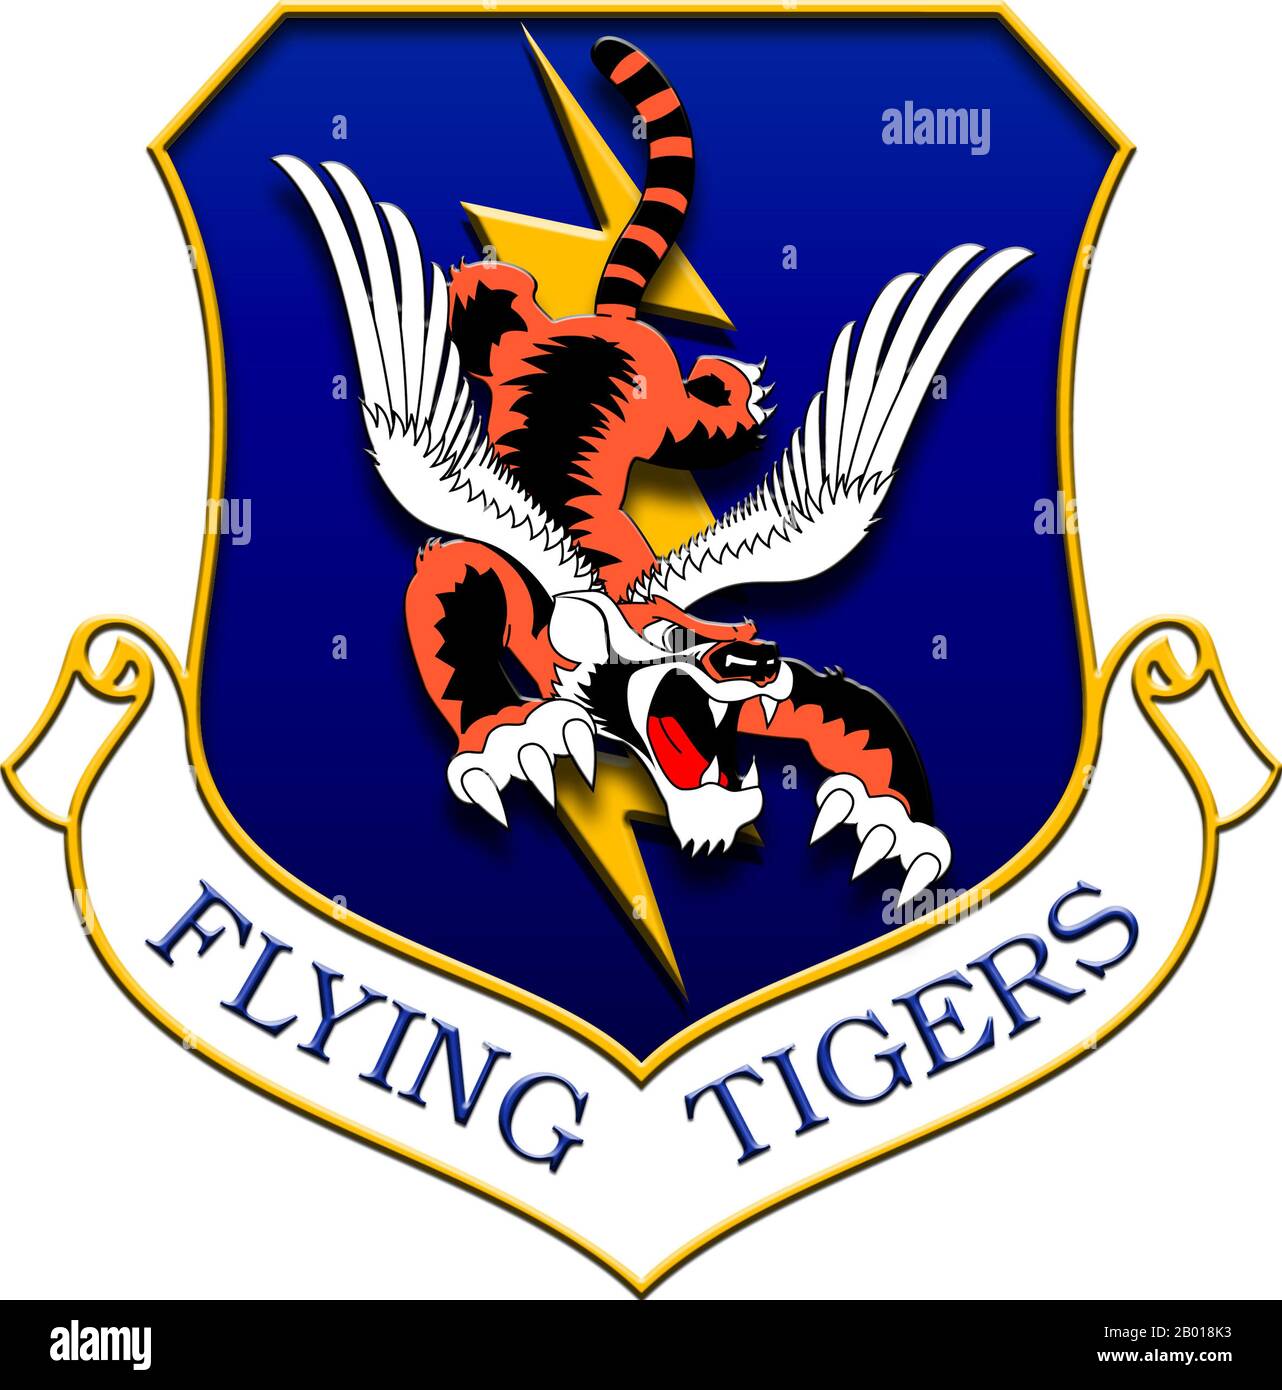 China/Burma/India Theatre: Abzeichen des fliegenden Tigers, getragen von Piloten und Flugzeugern der 23. Fighter Group (USAF). Flying Tigers war der beliebte Name der 1. American Volunteer Group (AVG) der chinesischen Luftwaffe in den Jahren 1941-1942. Die Piloten waren Mitarbeiter der US-Armee (USAAF), der Marine (USN) und des Marine Corps (USMC), die unter der Aufsicht des Präsidenten rekrutiert und von Claire Lee Chennault kommandiert wurden; die Bodenbesatzung und das Personal des Hauptquartiers wurden ebenfalls größtenteils vom US-Militär rekrutiert, zusammen mit einigen Zivilisten. Die Gruppe bestand aus drei Jagdgeschwadern mit jeweils etwa 20 Flugzeugen. Stockfoto